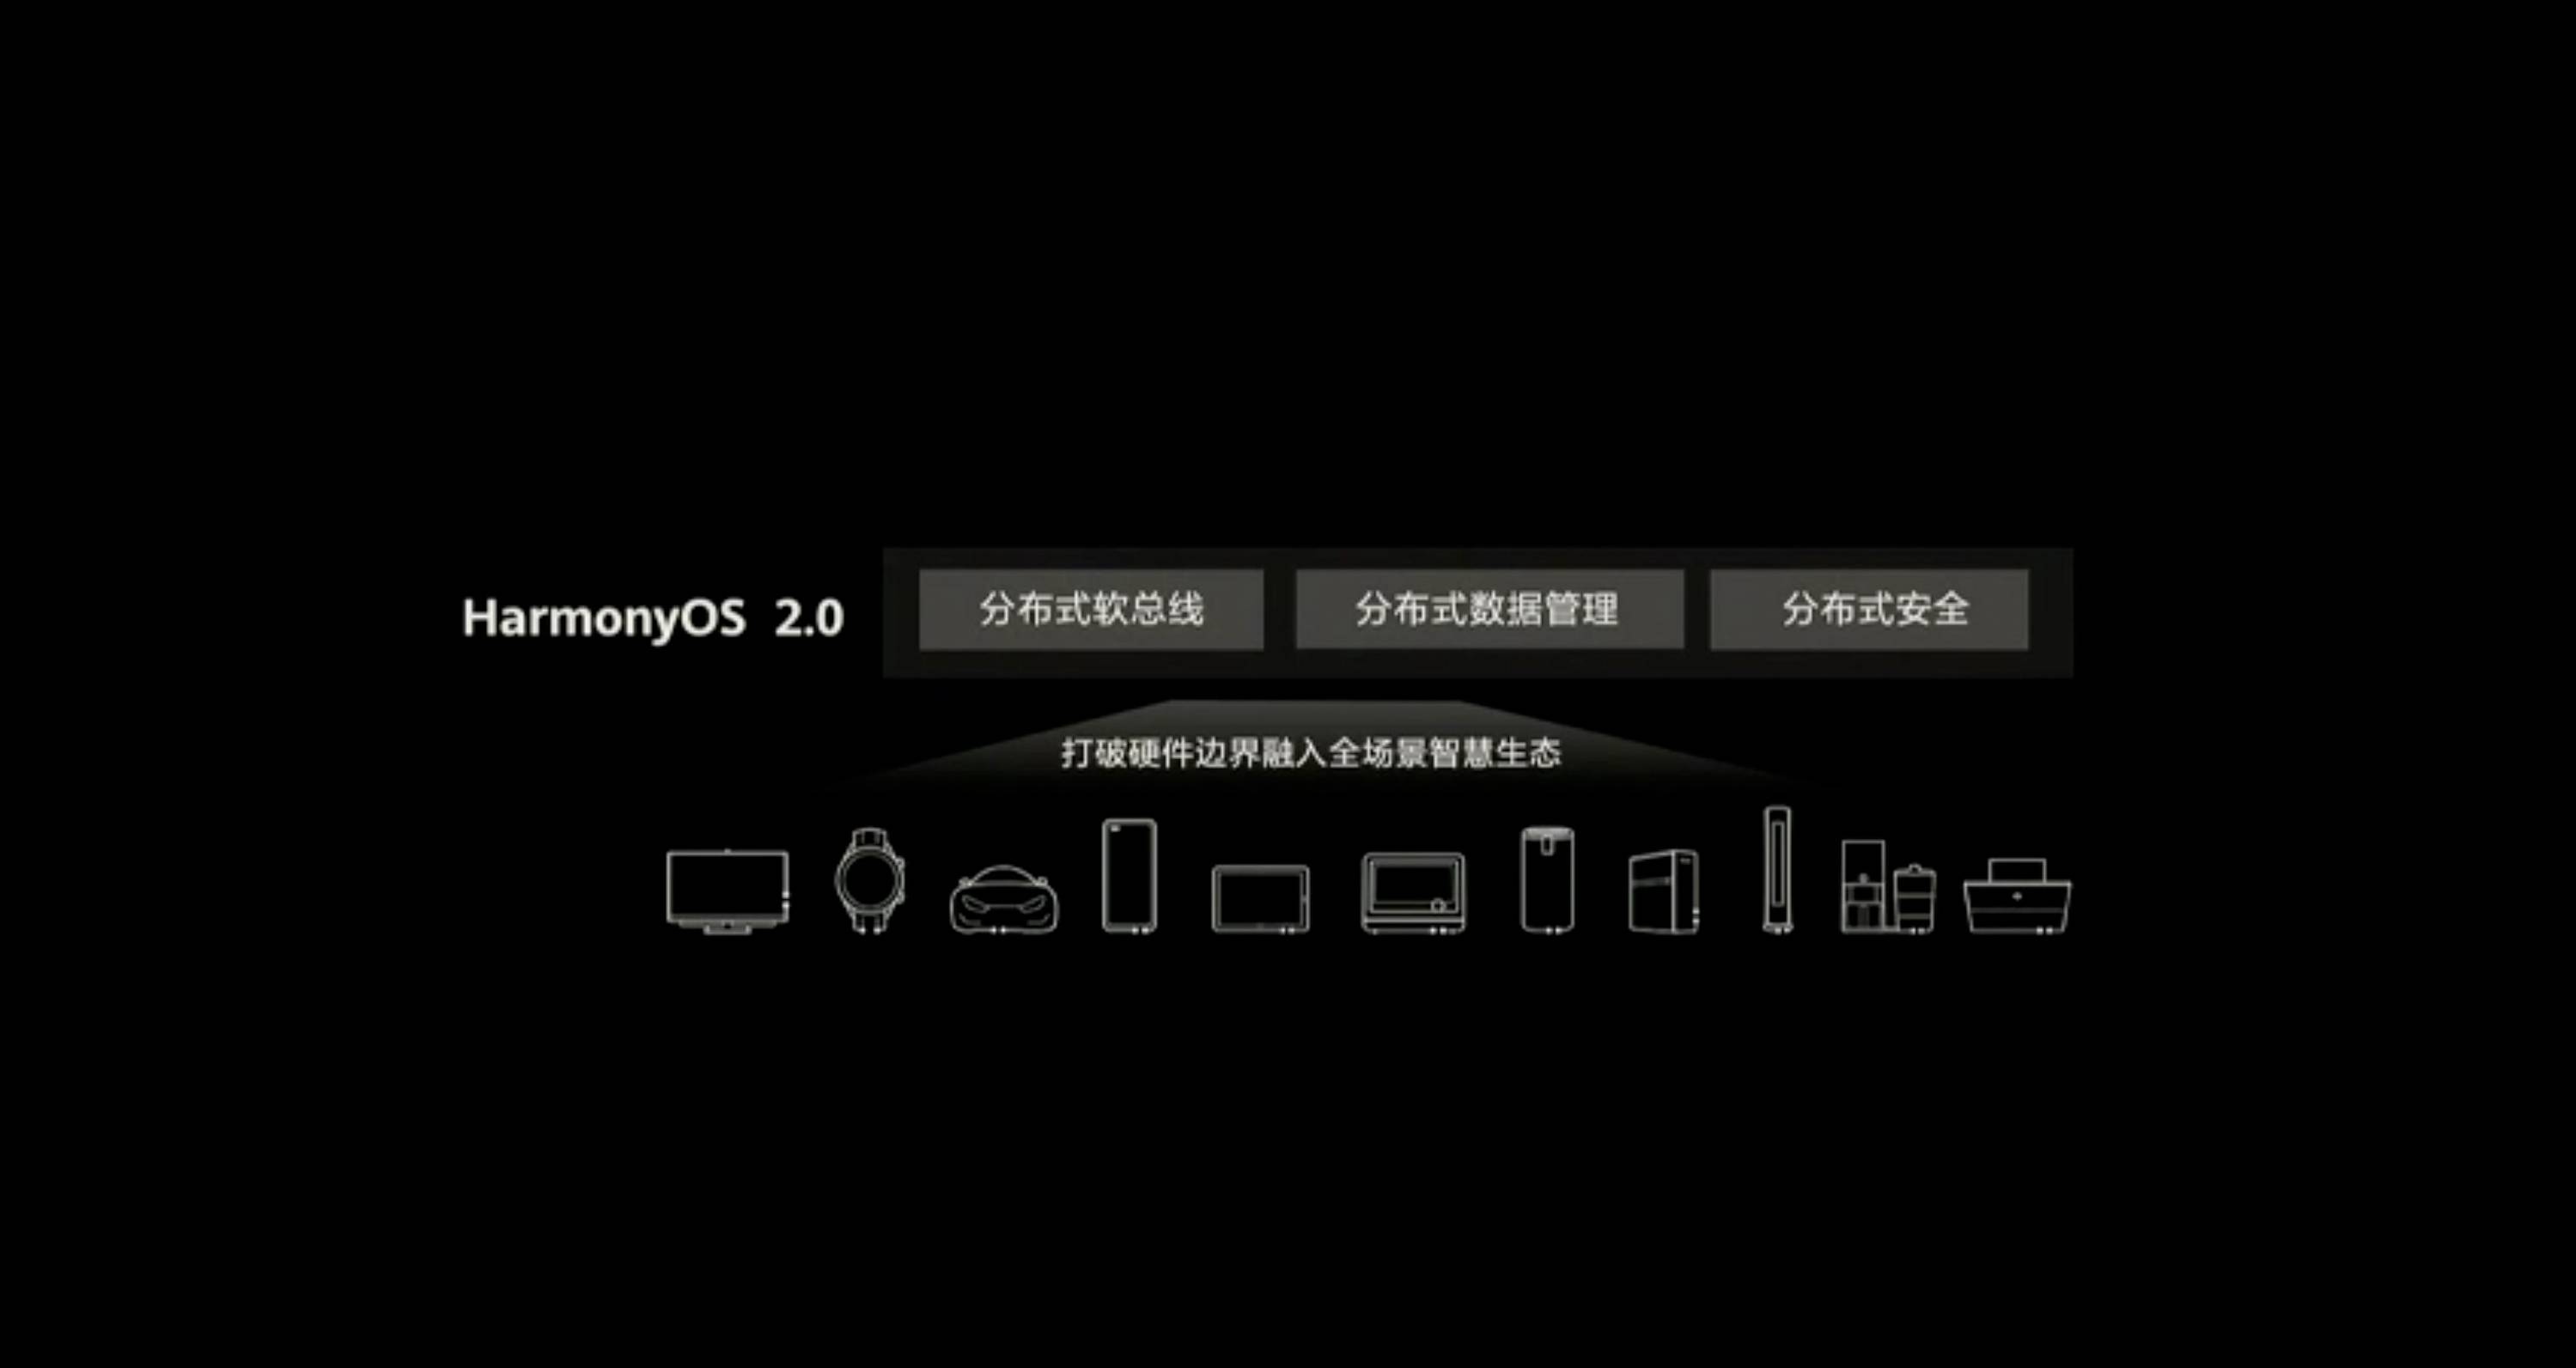 HDC 2020 PPT 46 - Huawei Hongmeng 2.0 è qui! Se non esegui un secondo Android, sarai sul tuo telefono entro la fine dell’anno